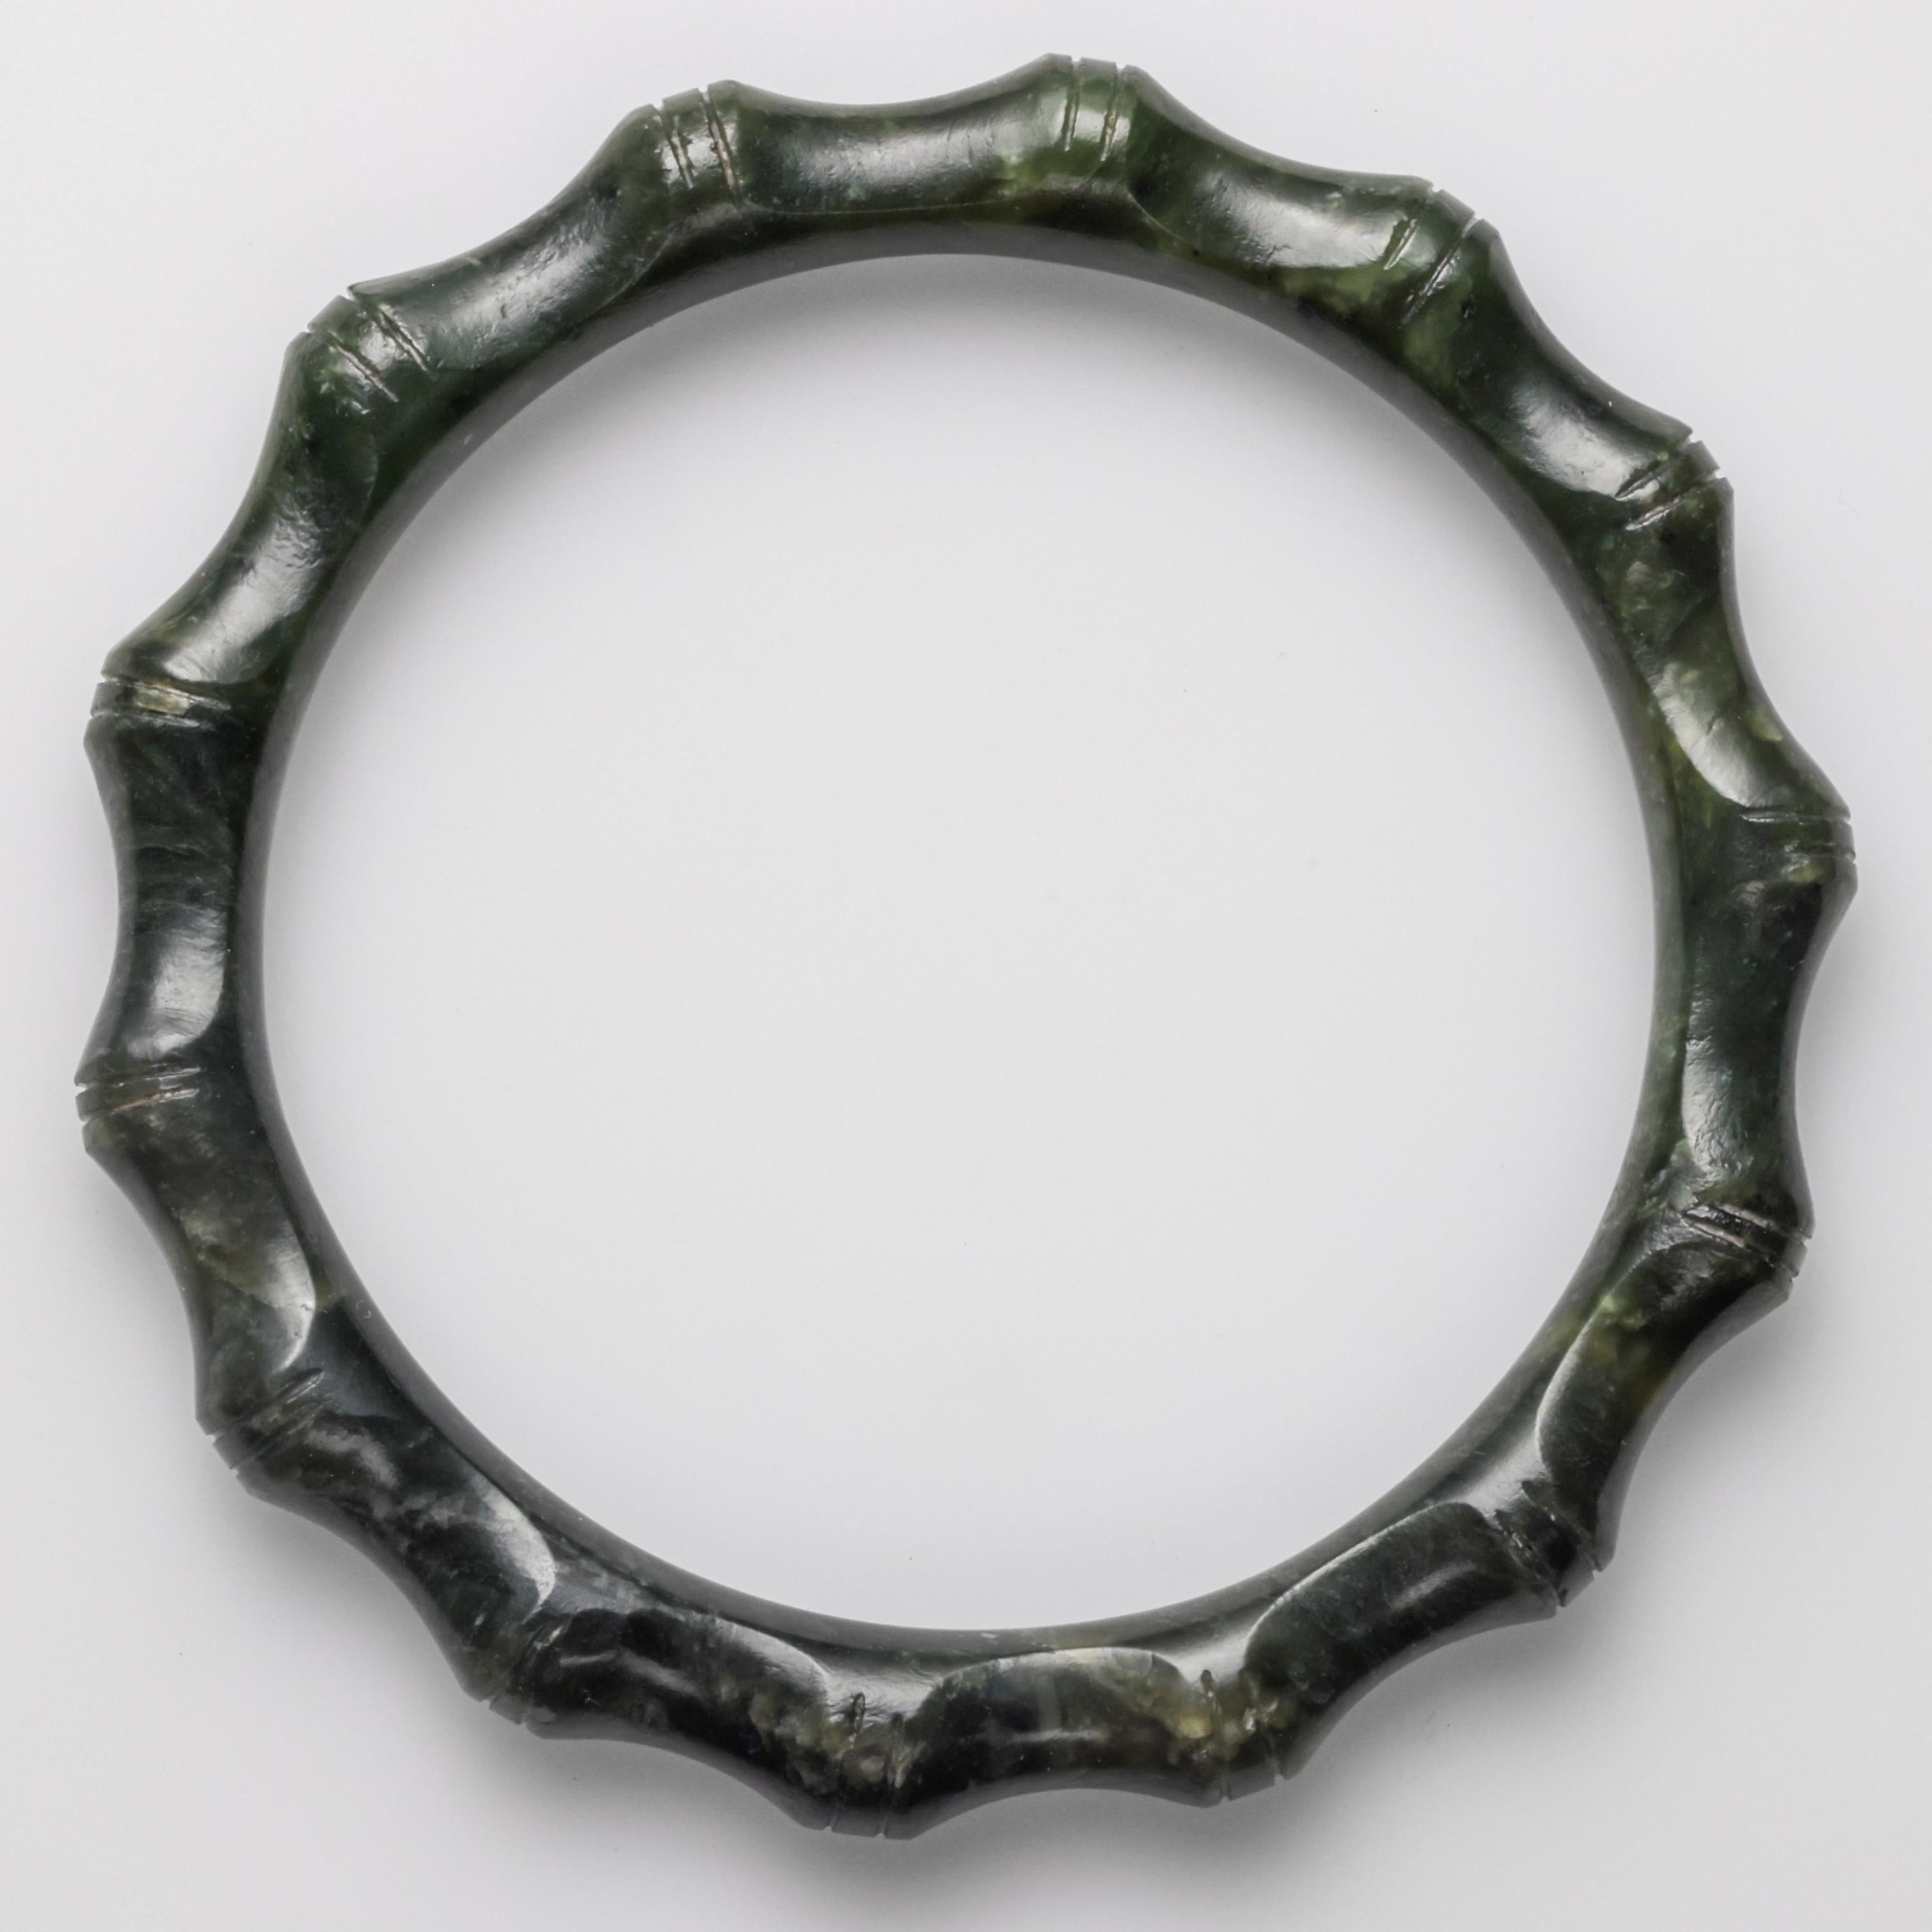 Ce bracelet en jade néphrite d'un vert profond a été sculpté à la main au début des années 1950 pour ressembler à un bambou segmenté. Il présente le poli de la révolution préindustrielle de cette époque, avant que les outils électriques et les